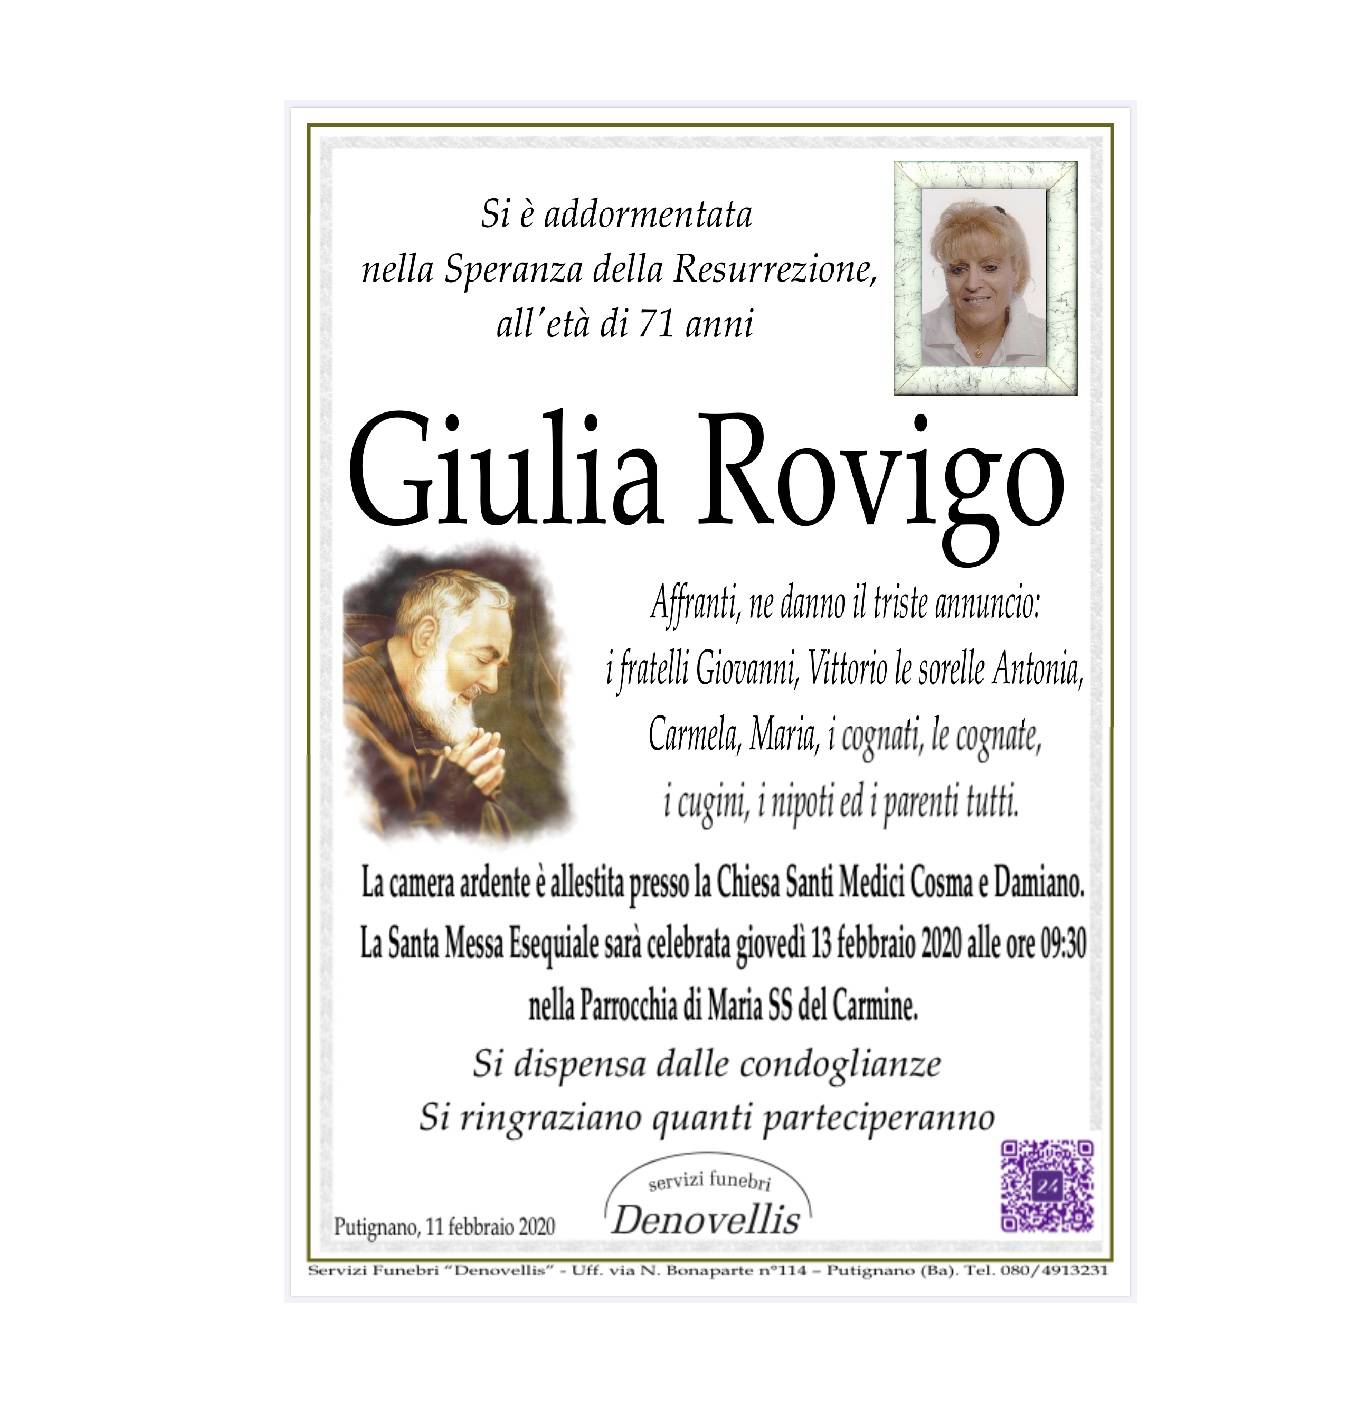 Giulia Rovigo